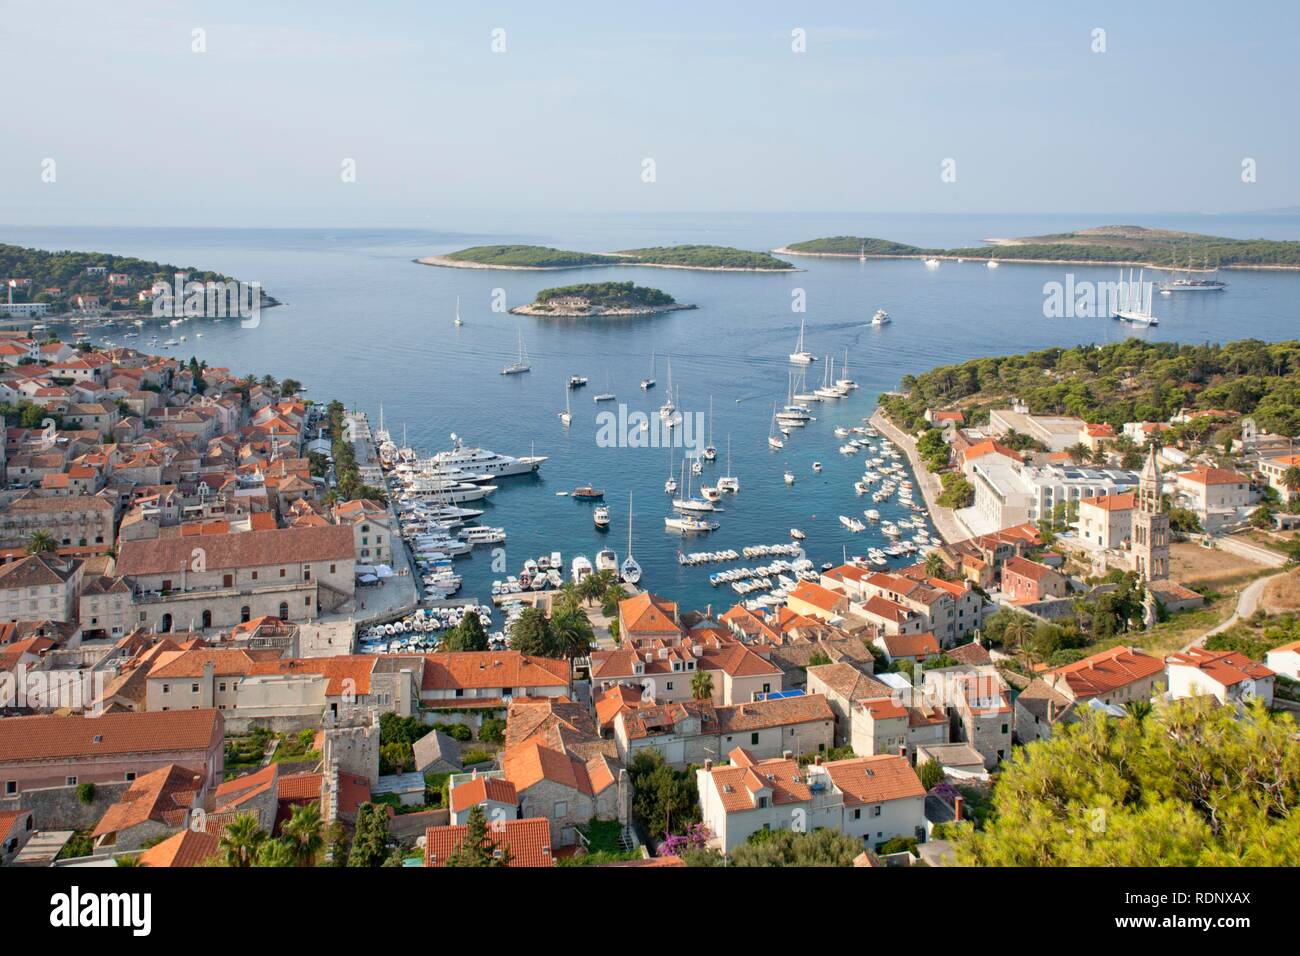 Vista della citta di Hvar dalla rocca, Hvar, isola della Dalmazia centrale, Adriatico, Croazia, Europa Foto Stock